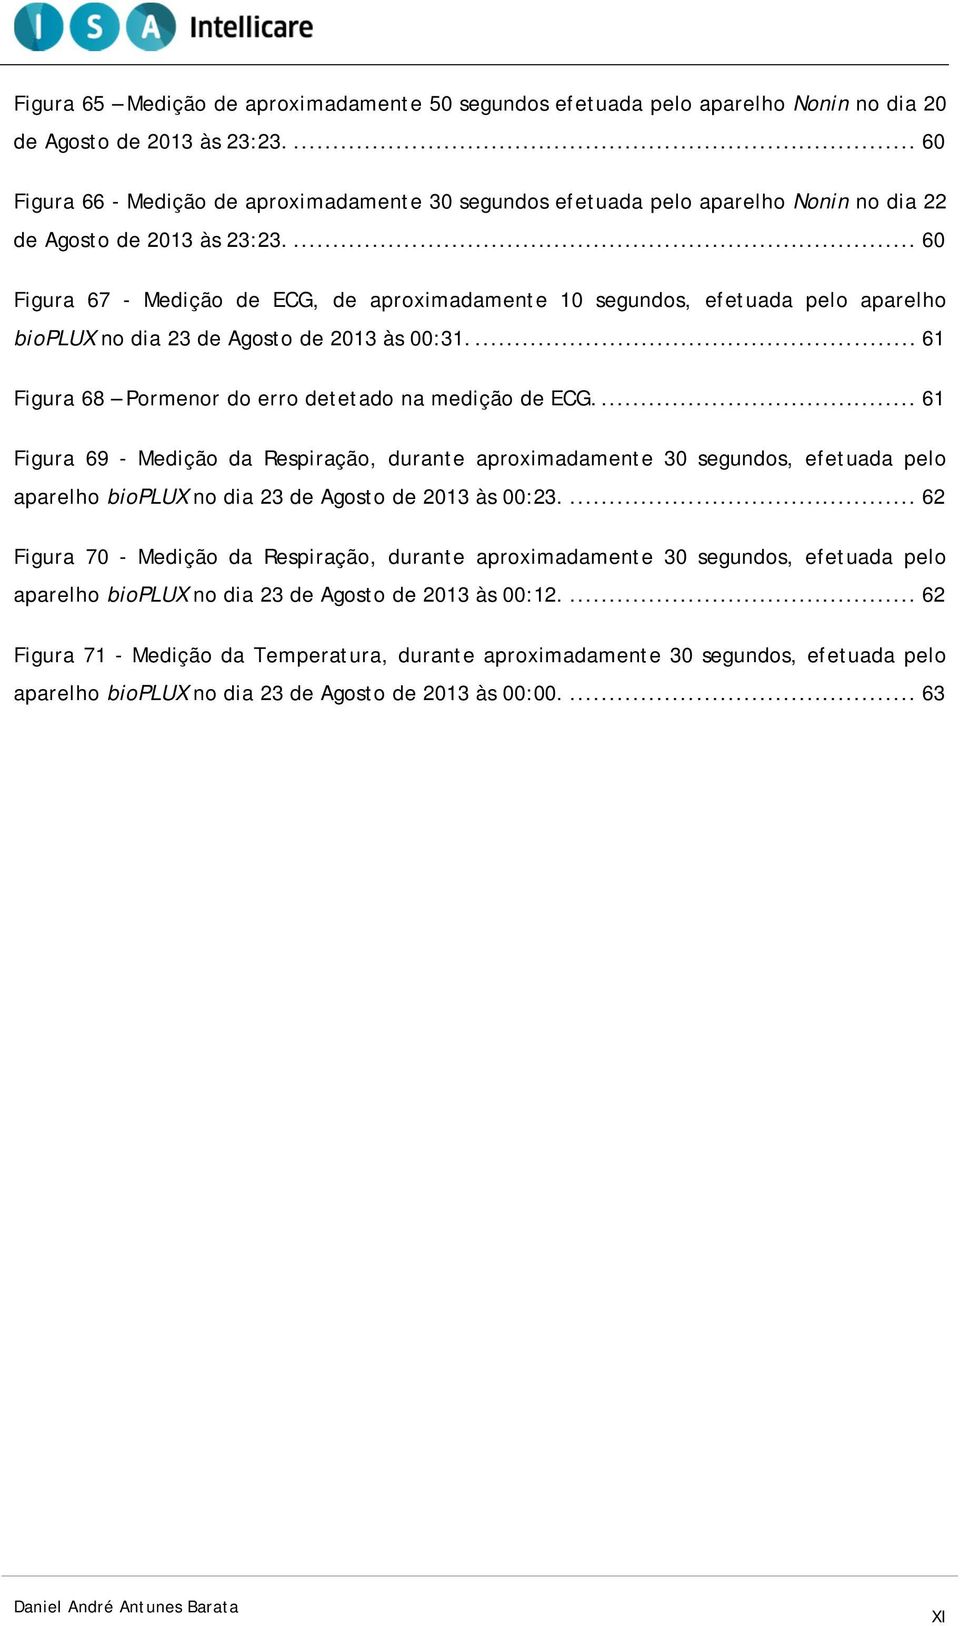 ... 60 Figura 67 - Medição de ECG, de aproximadamente 10 segundos, efetuada pelo aparelho bioplux no dia 23 de Agosto de 2013 às 00:31.... 61 Figura 68 Pormenor do erro detetado na medição de ECG.